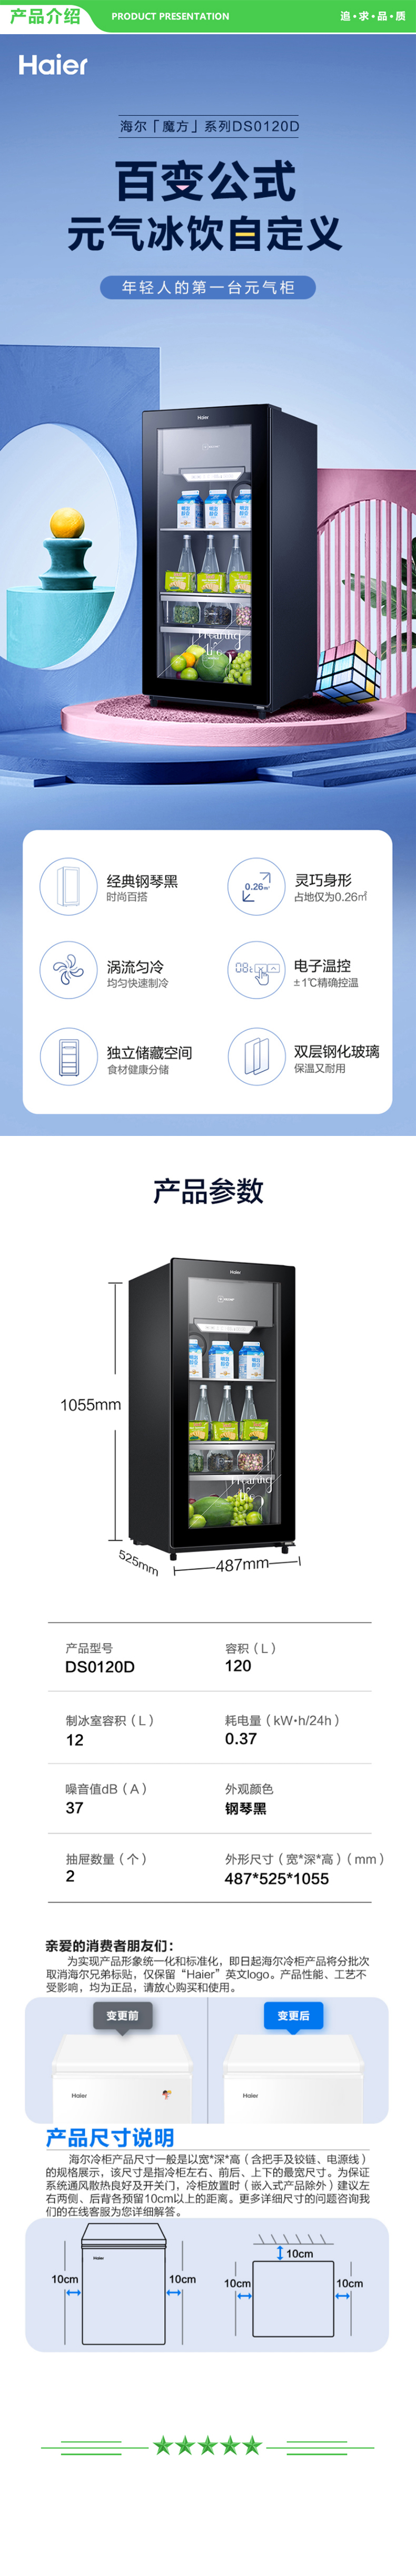 海尔 Haier DS0120D  120升智能双温家用客厅办公室冷藏柜暖藏冰吧 茶叶饮料水果保鲜柜囤货小型冰箱 .jpg